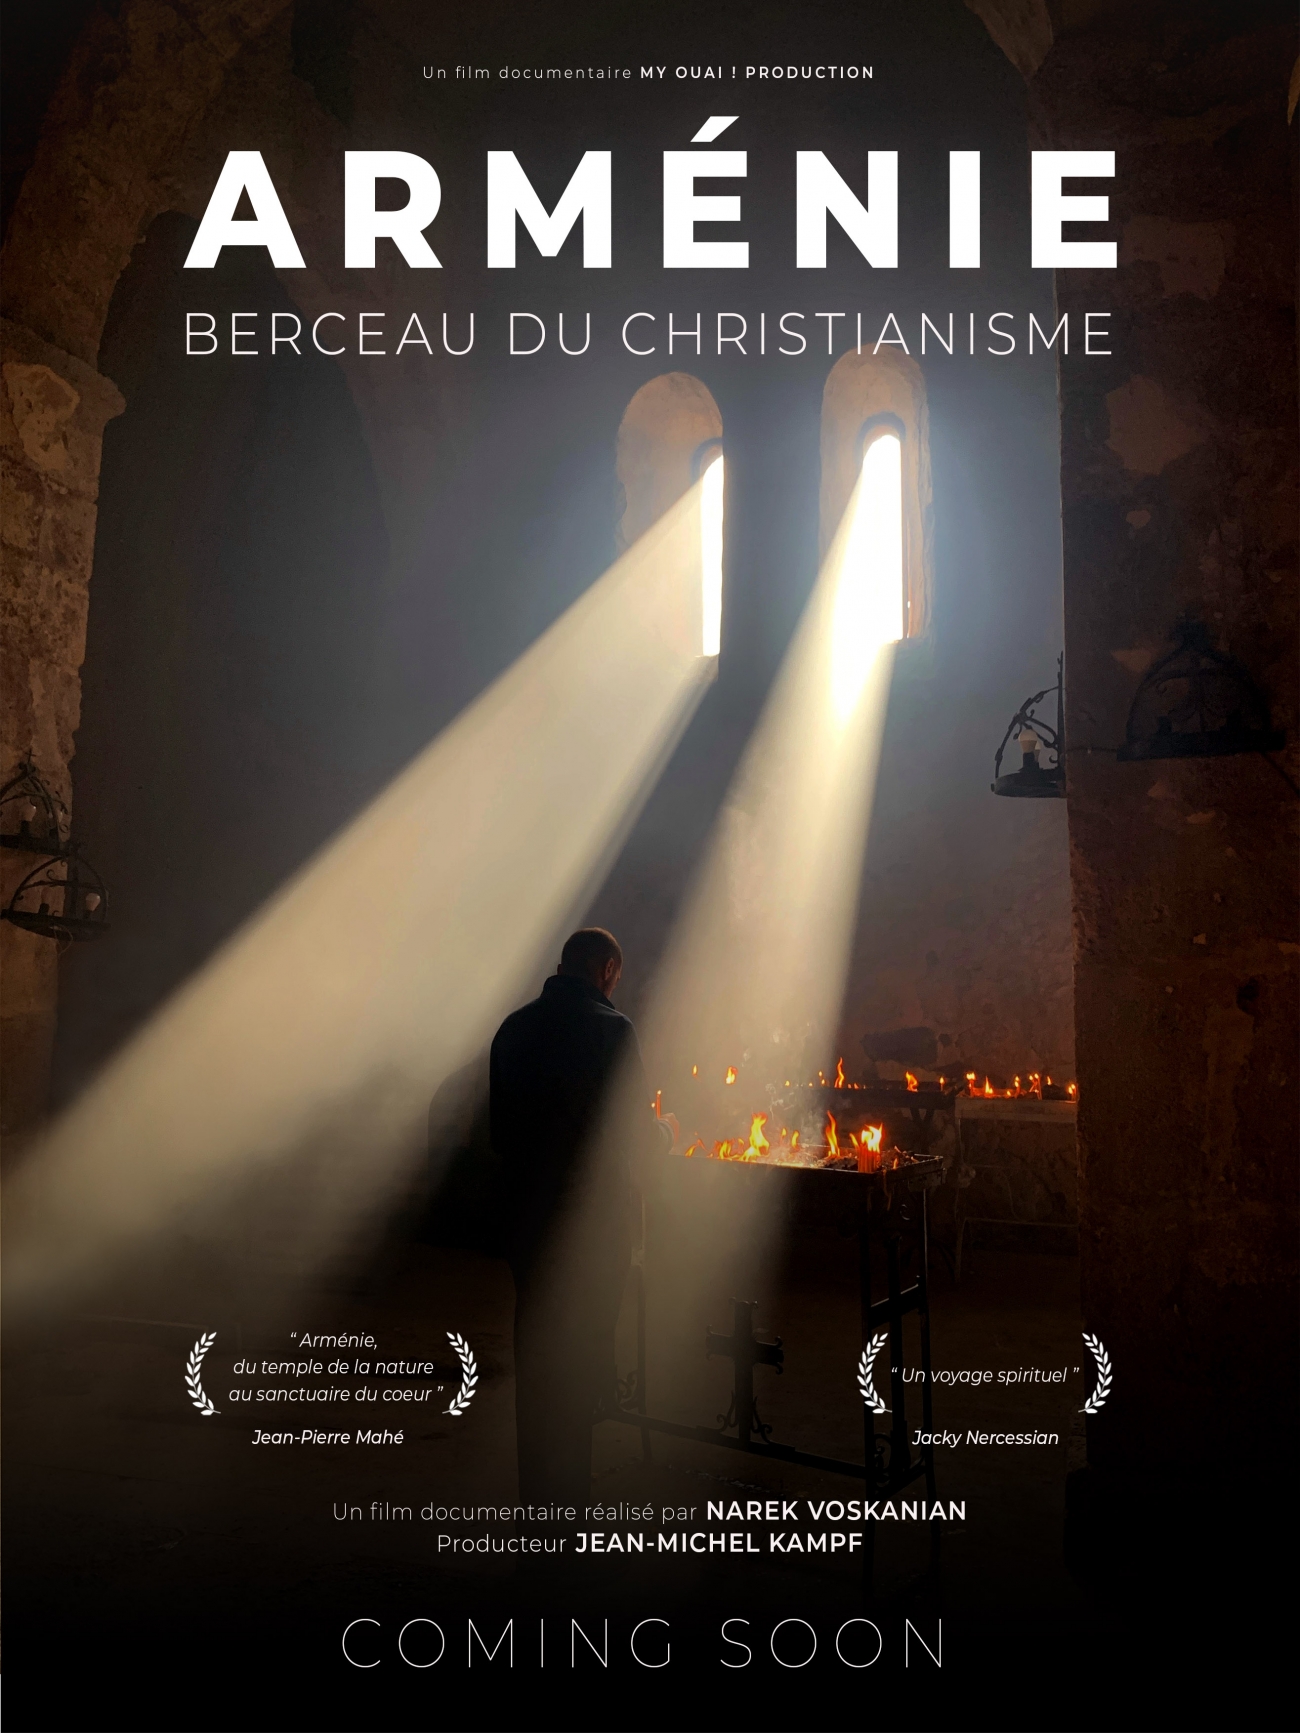 Arménie, berceau du Christianisme - Teaser